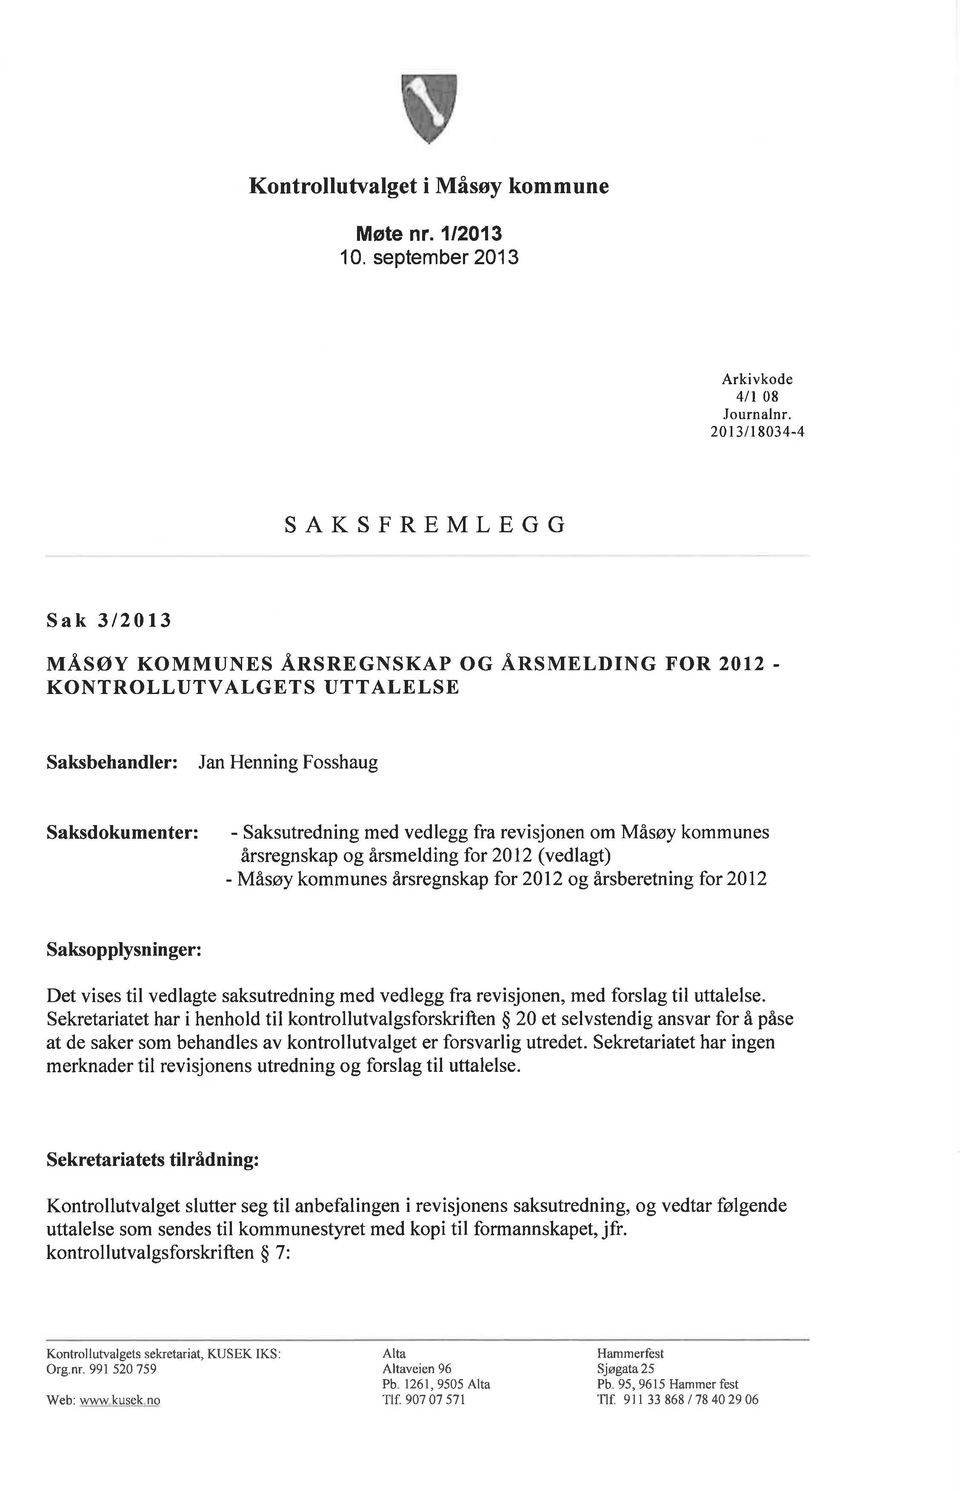 kommunes årsregnskap for 2012 og årsberetningfor 2012 Saksopplysninger: Det vises til vedlagte saksutredning med vedlegg fra revisjonen, med forslag til uttalelse.